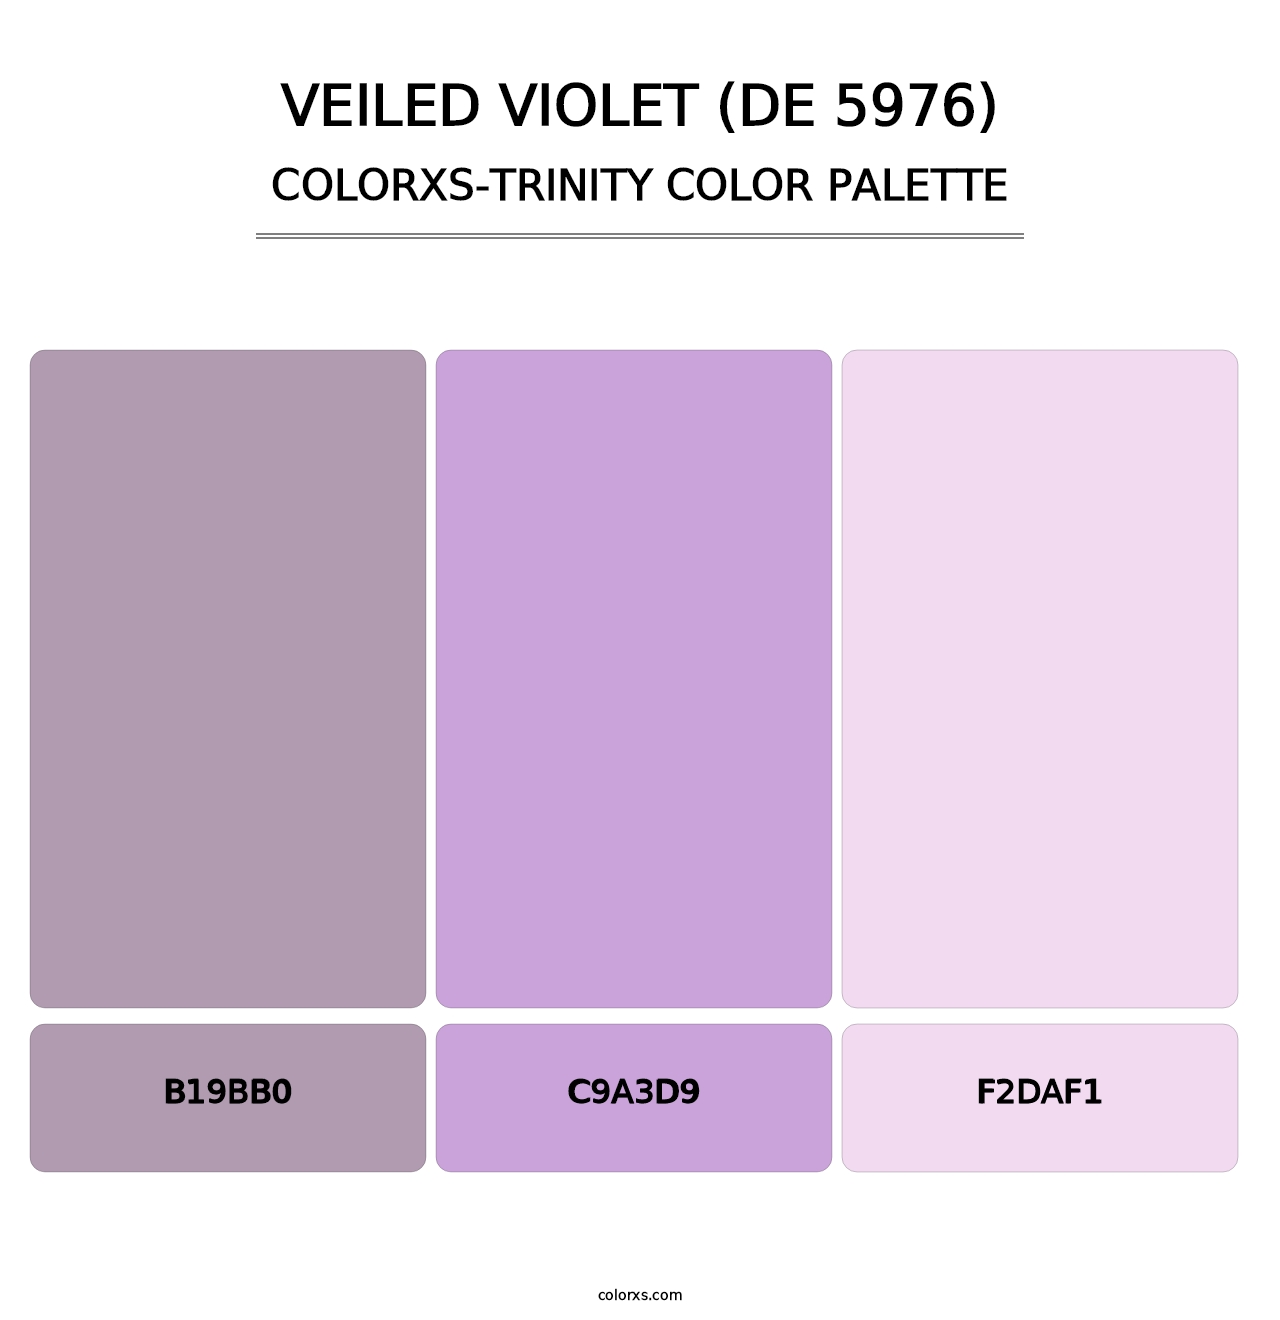 Veiled Violet (DE 5976) - Colorxs Trinity Palette